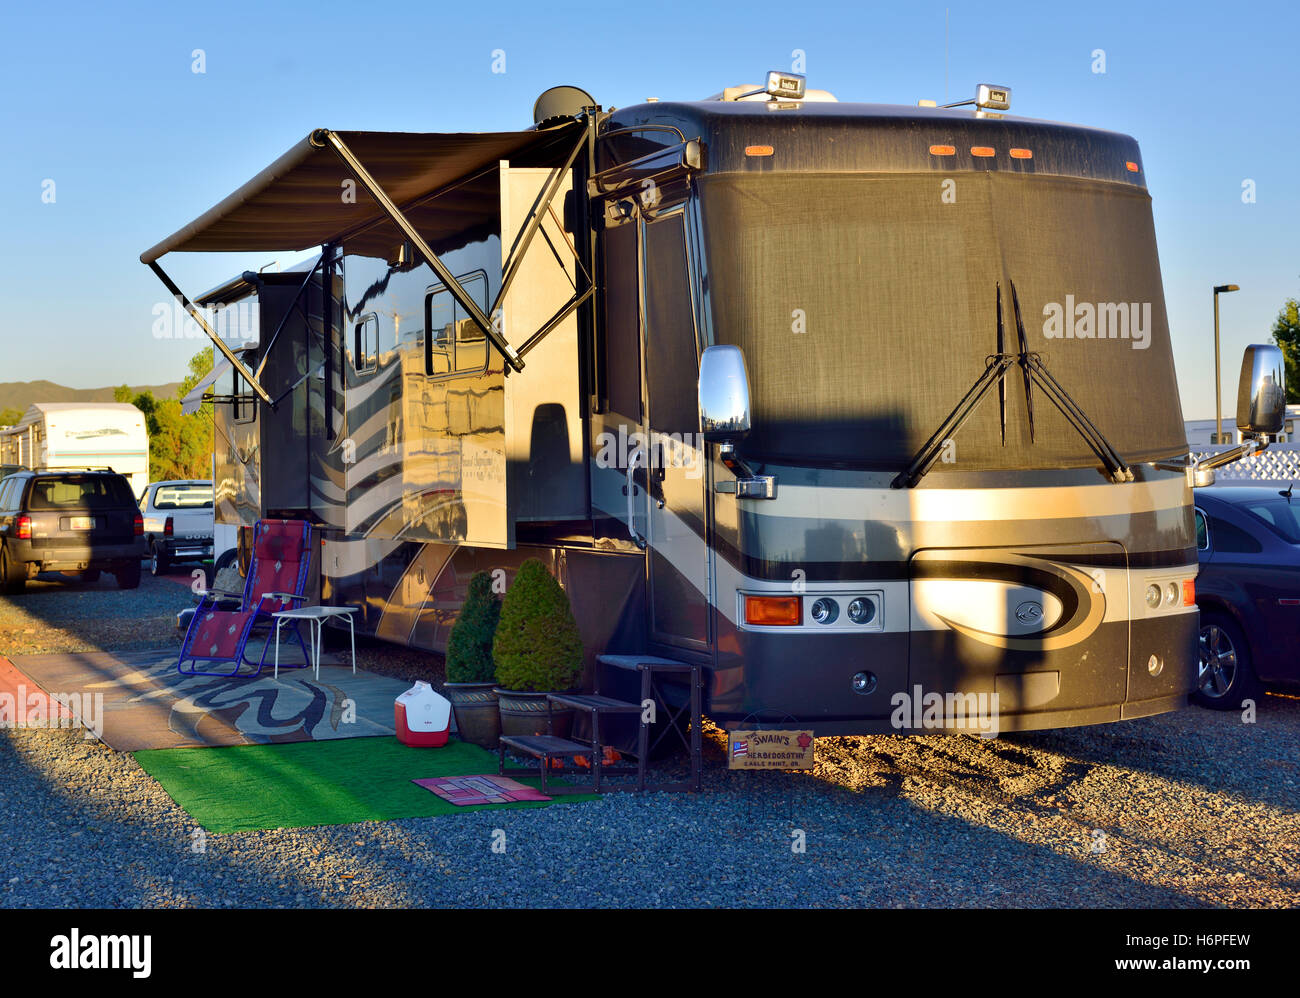 Touring estrarre camper parcheggiato e collegata ai servizi in Prescott Valley, Arizona, Stati Uniti d'America Foto Stock